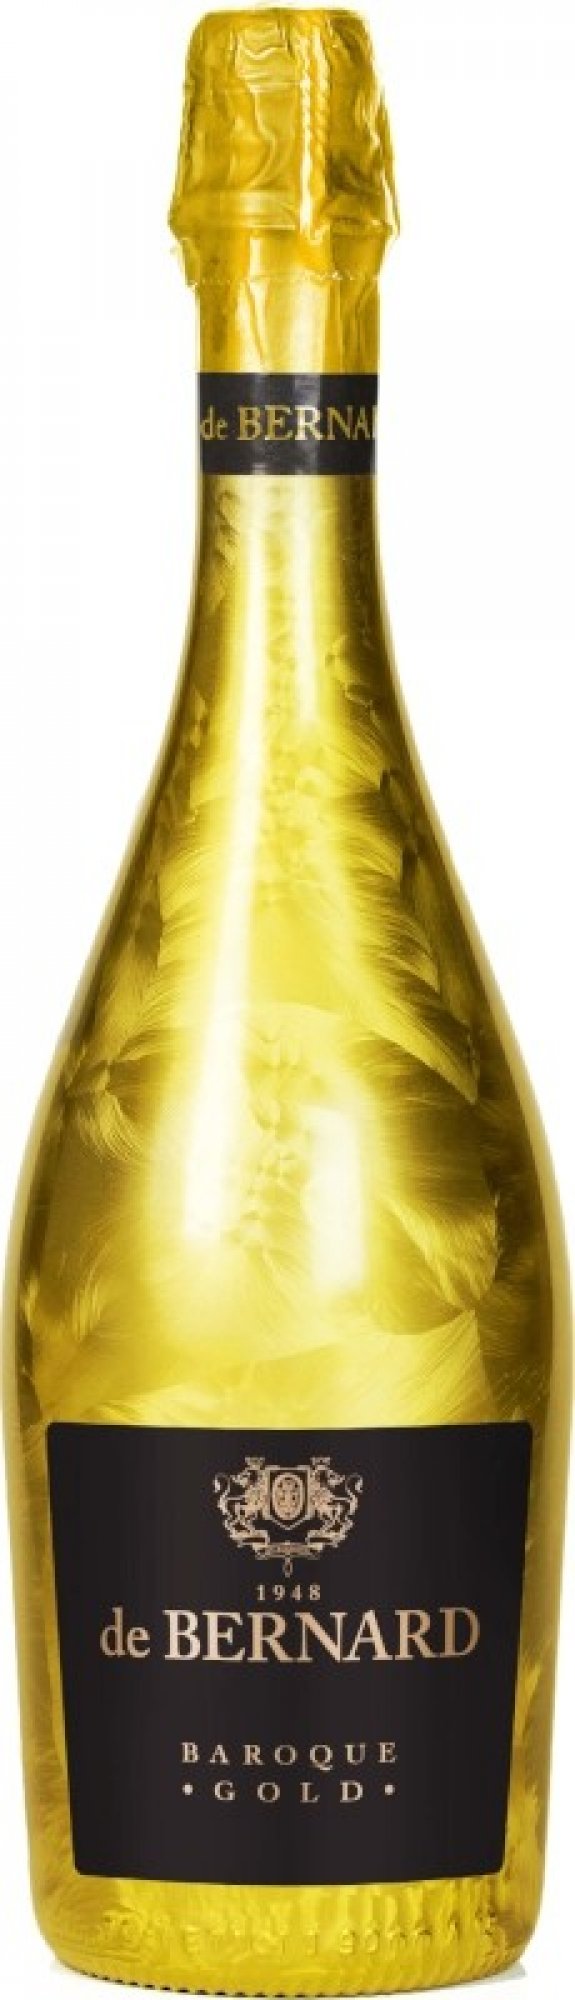 BERNARD BAROQUE EXTRA DRY GOLD BOTTLE 0.75L 11% (čistá fľaša)